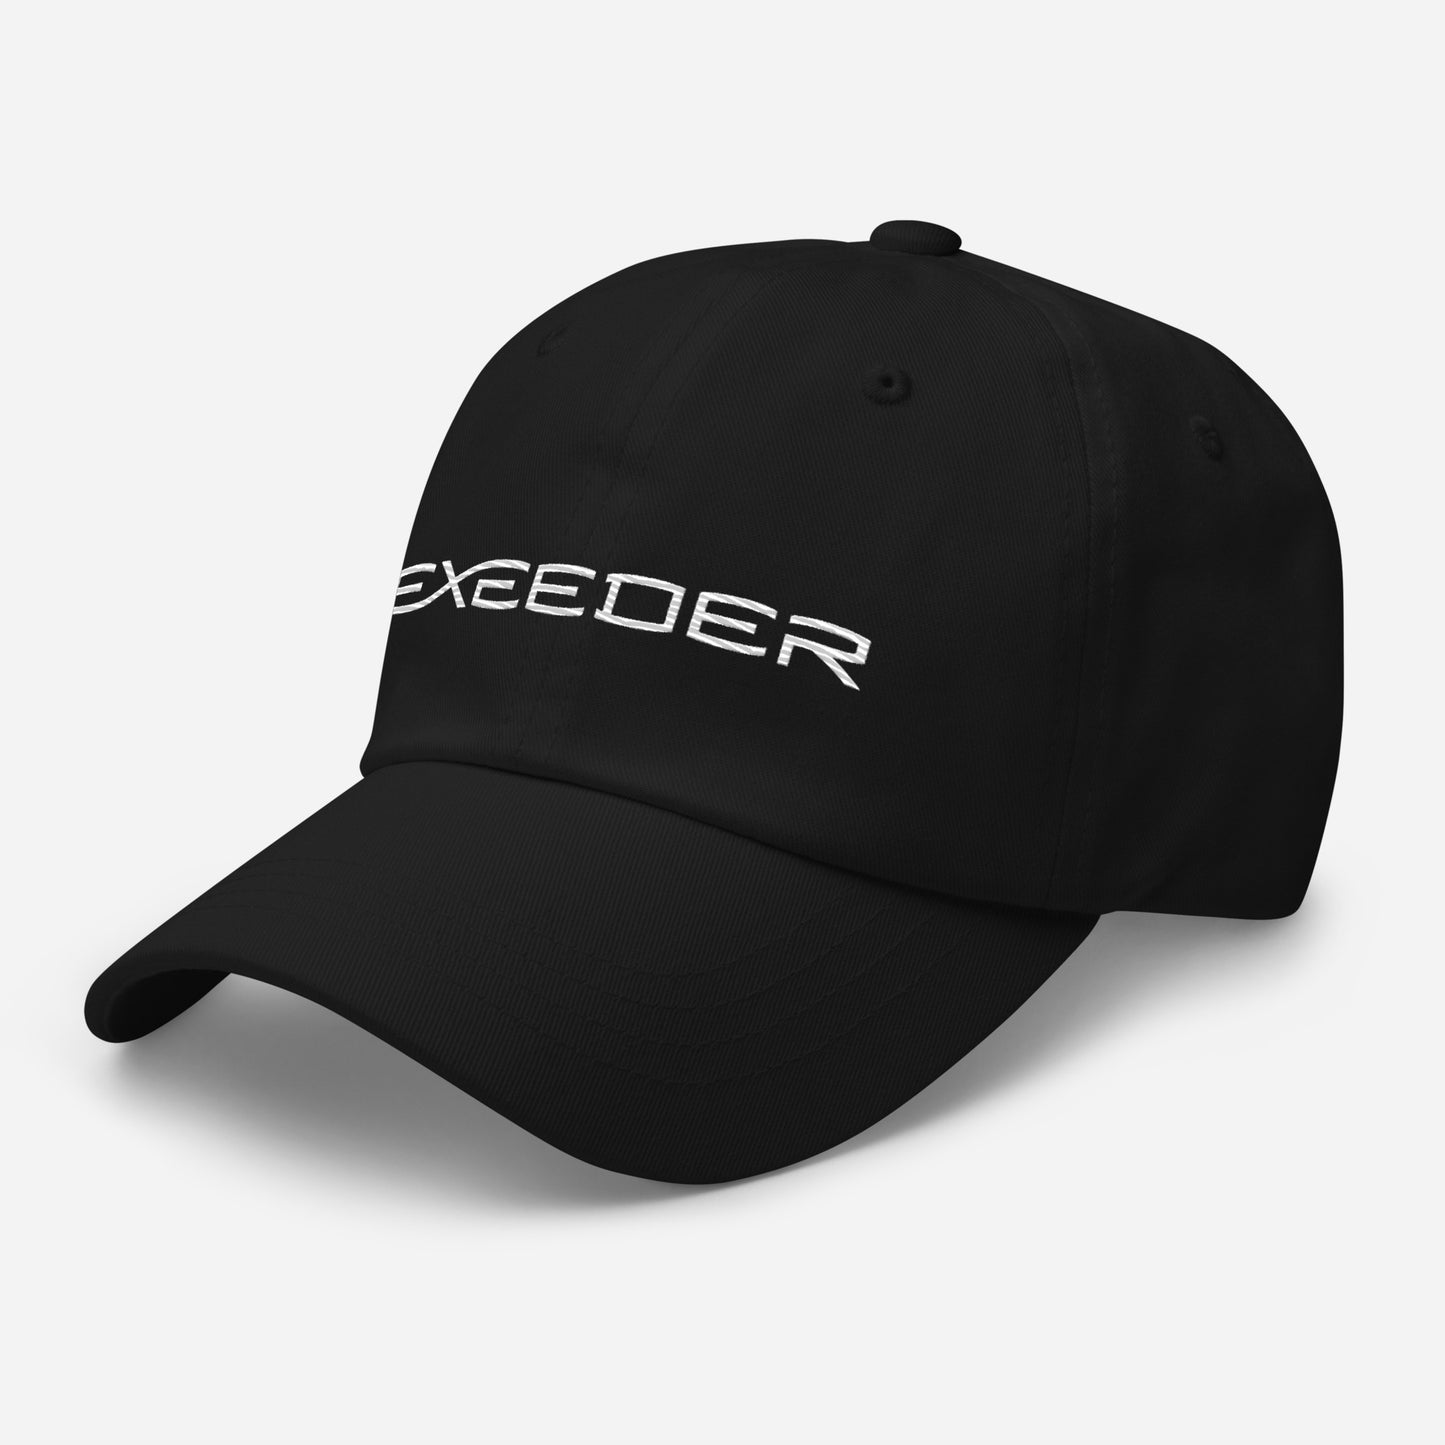 Exeeder Ball Cap